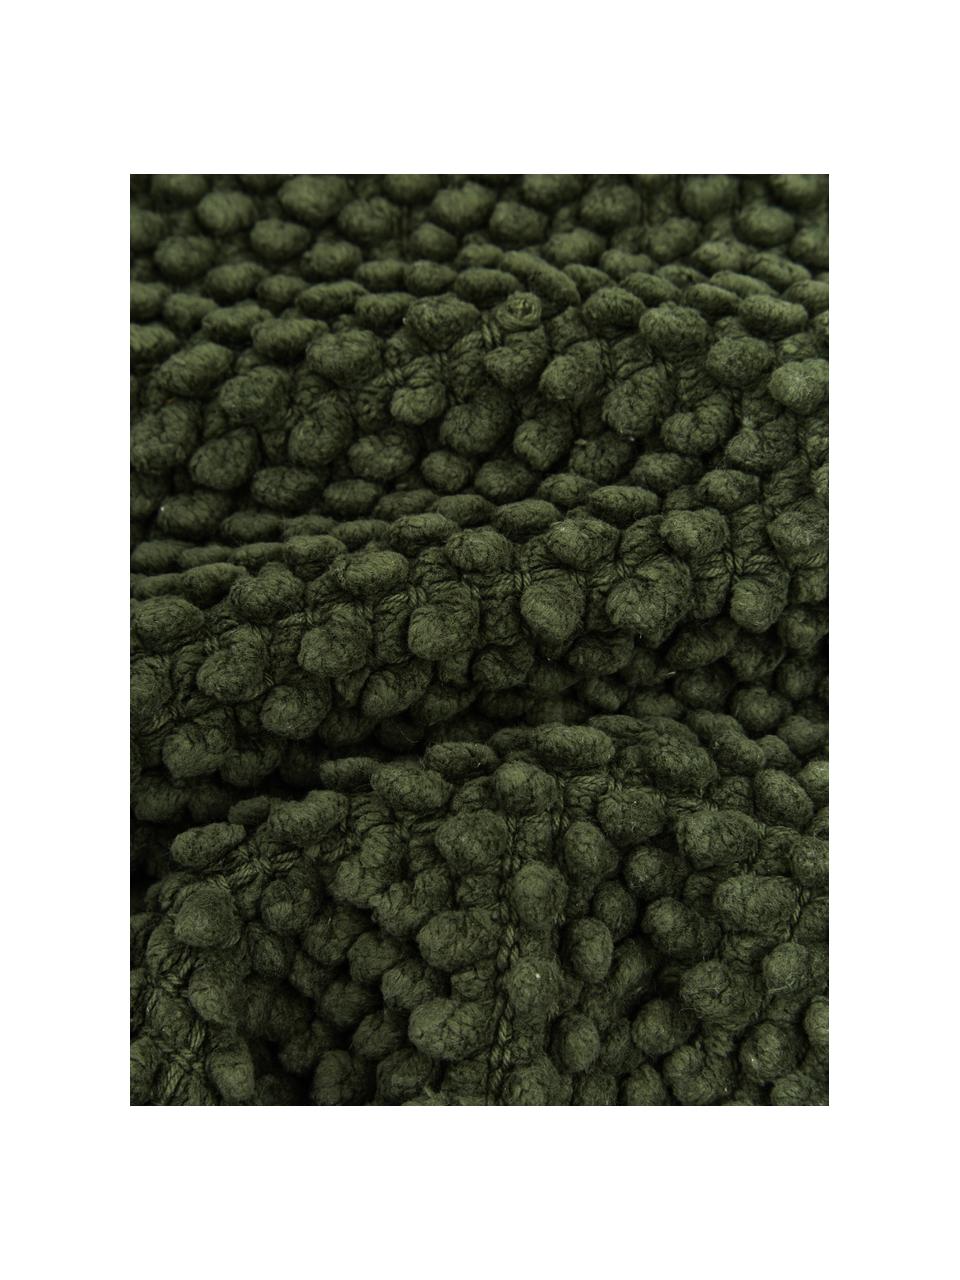 Kussenhoes Indi met gestructureerde oppervlak in donkergroen, 100% katoen, Donkergroen, 30 x 50 cm